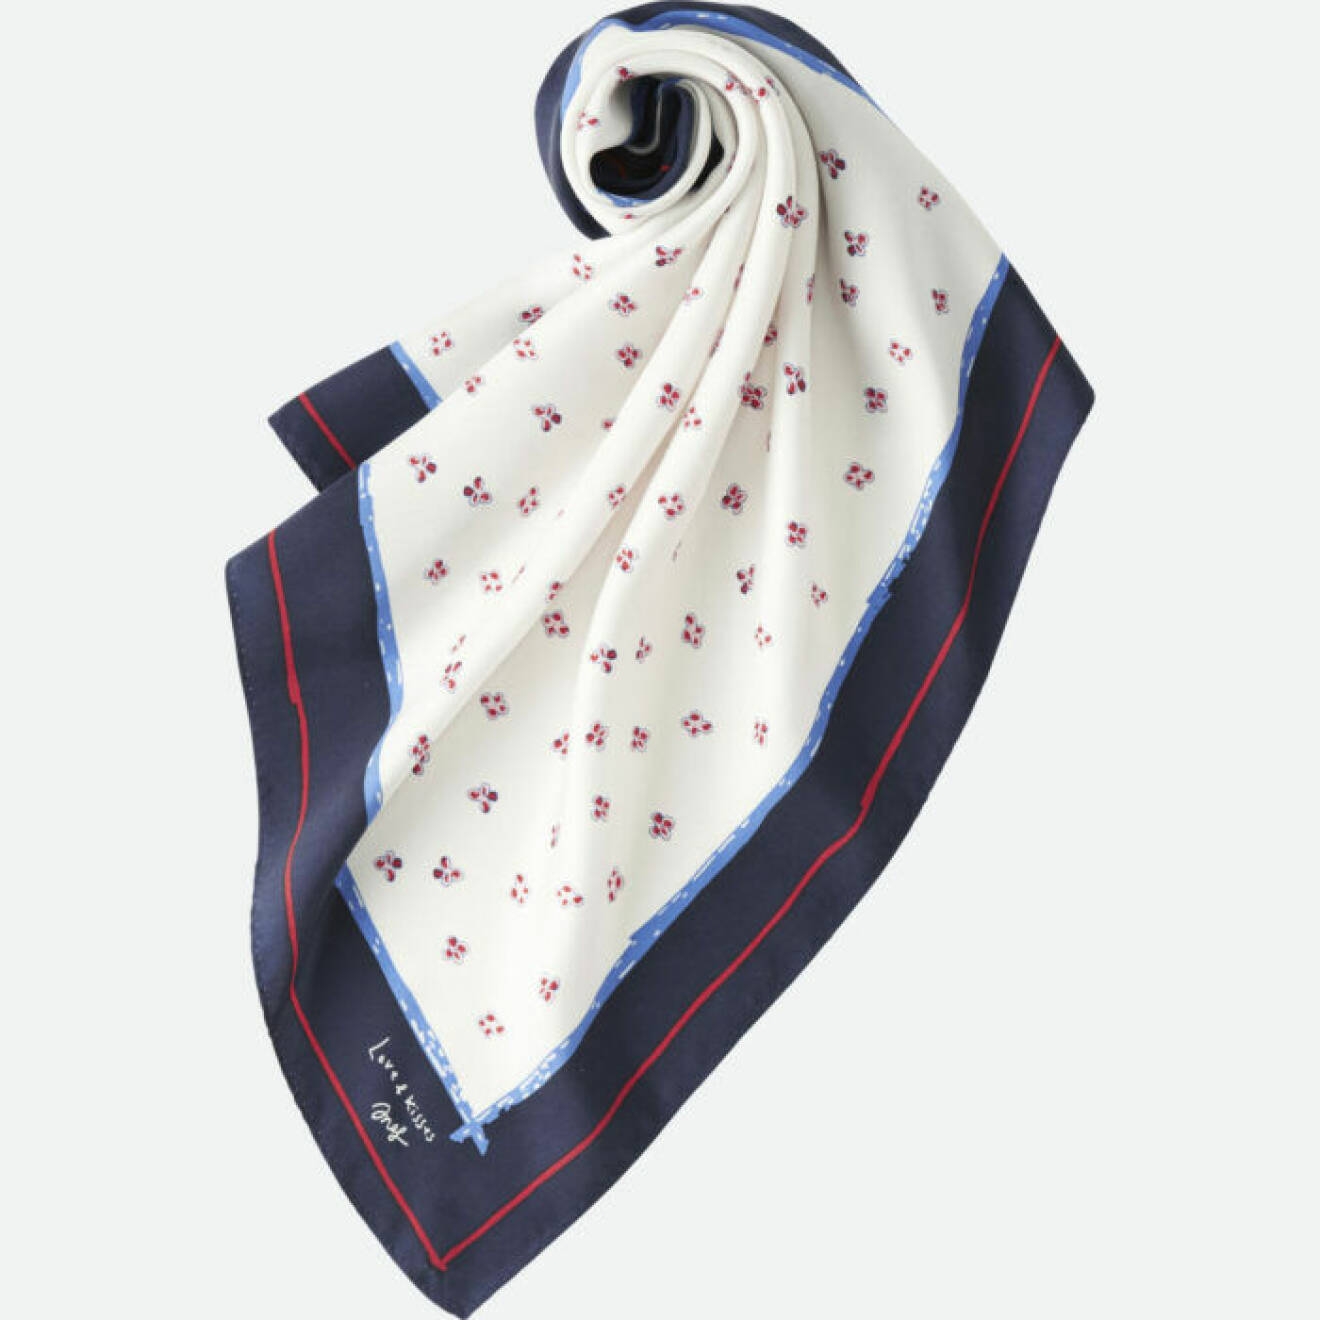 Mönstrad sjal i de franska färgerna marinblått, vitt och rött. 